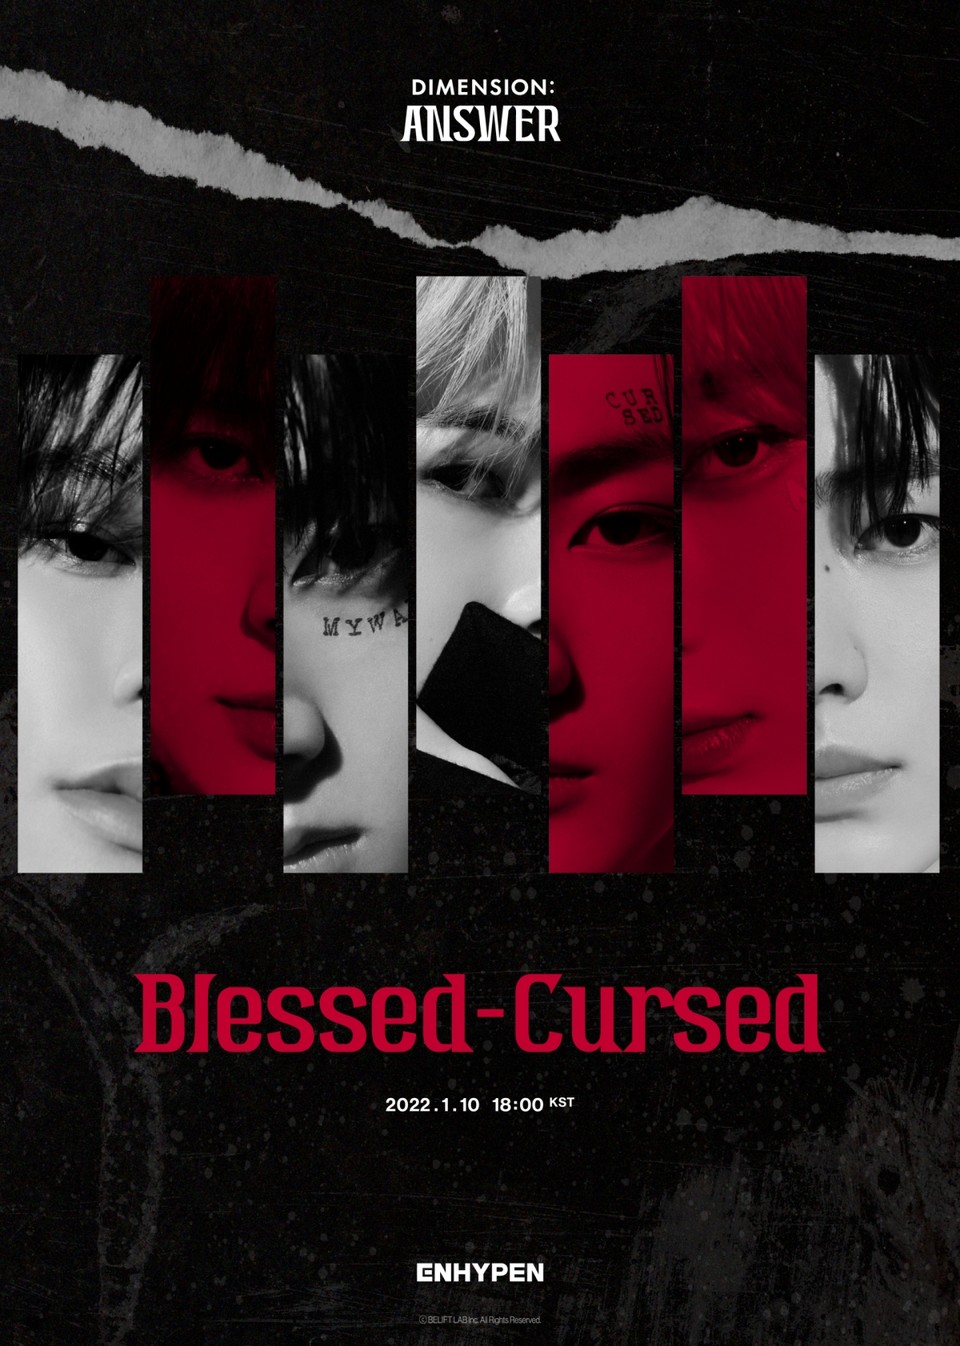 엔하이픈, 새 앨범 타이틀곡 ‘Blessed-Cursed’ 포스터 공개 '강렬한 분위기'